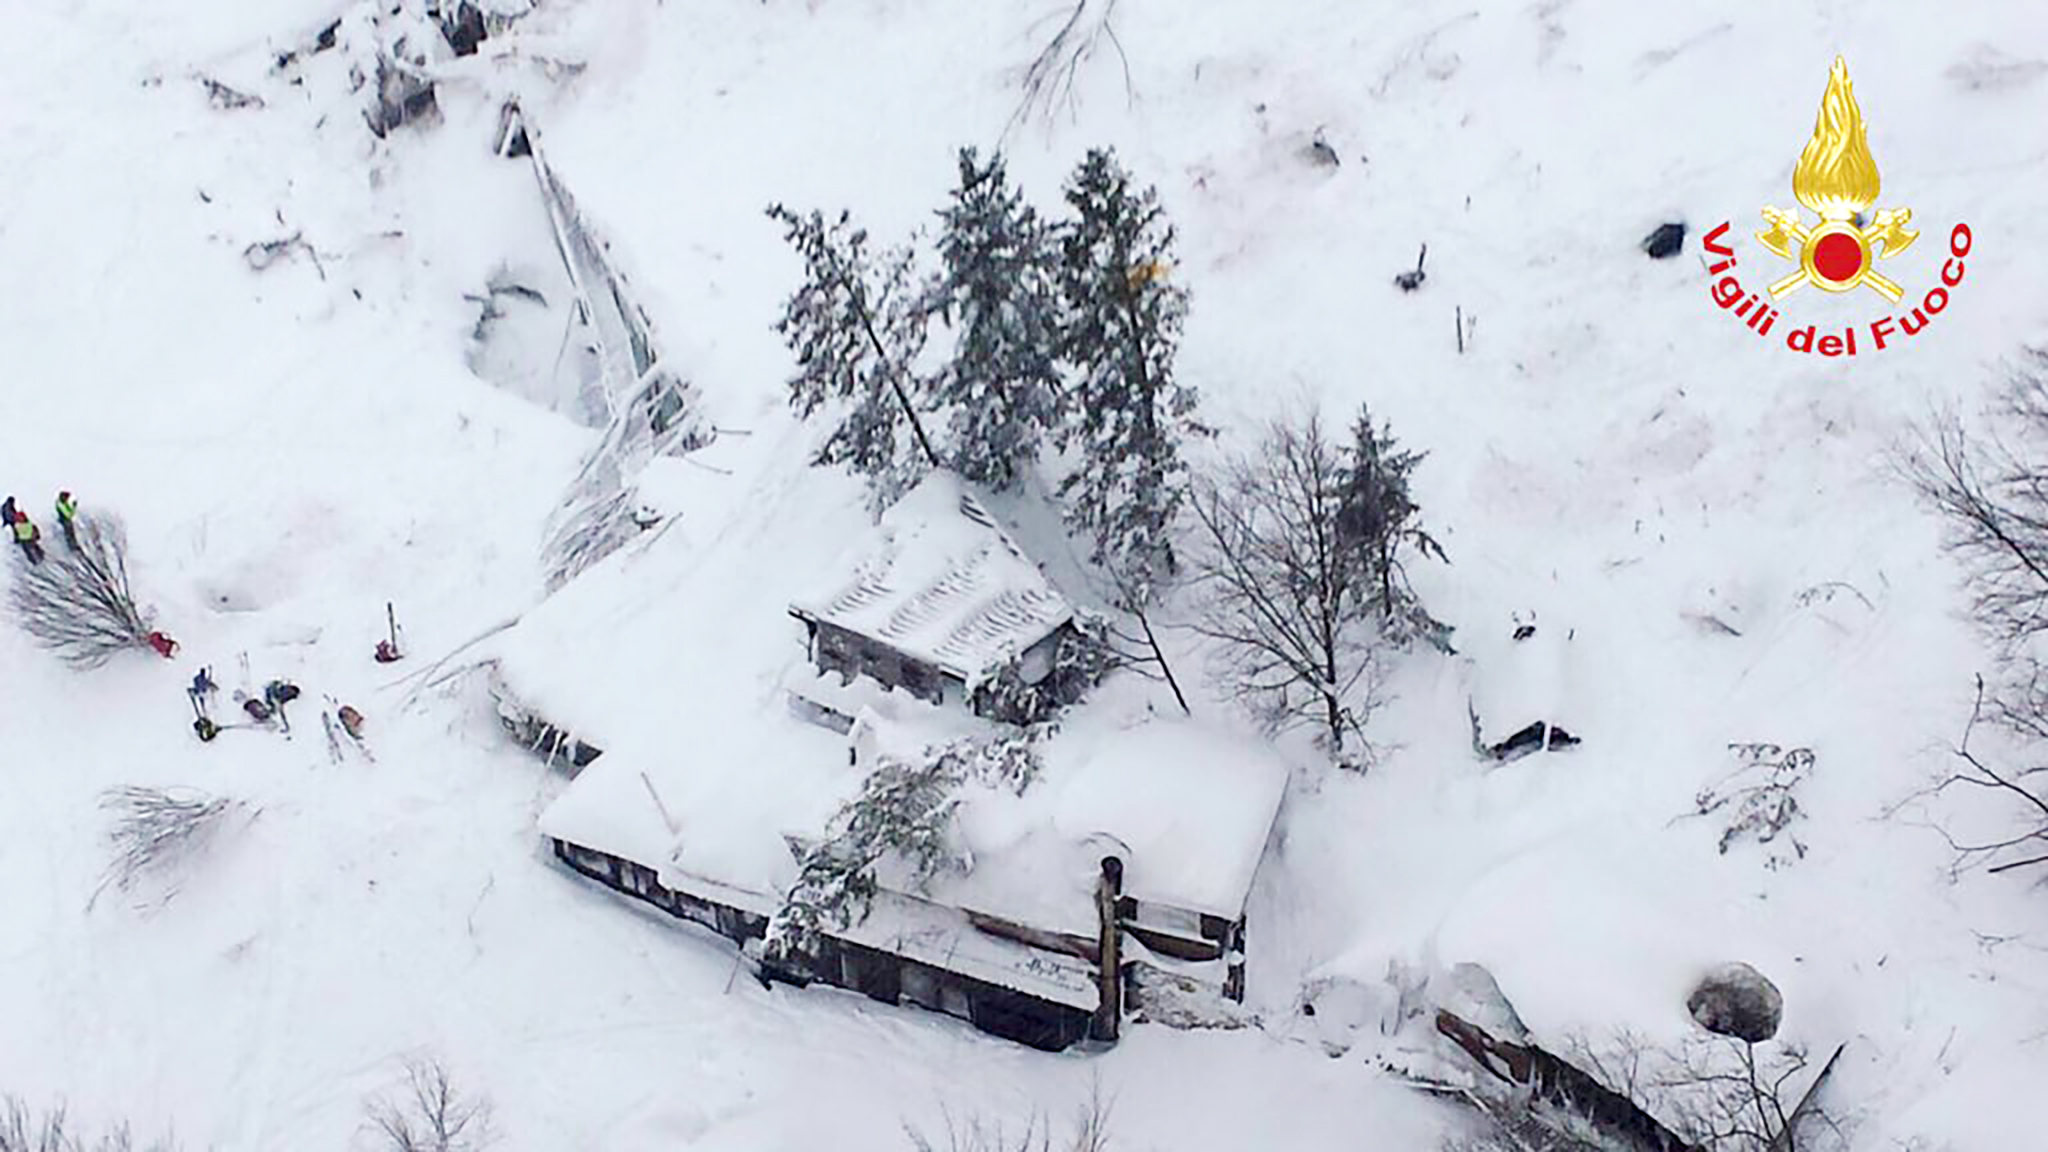 Több mint egy nappal a lavina után 6 túlélőt találtak a hó alatt